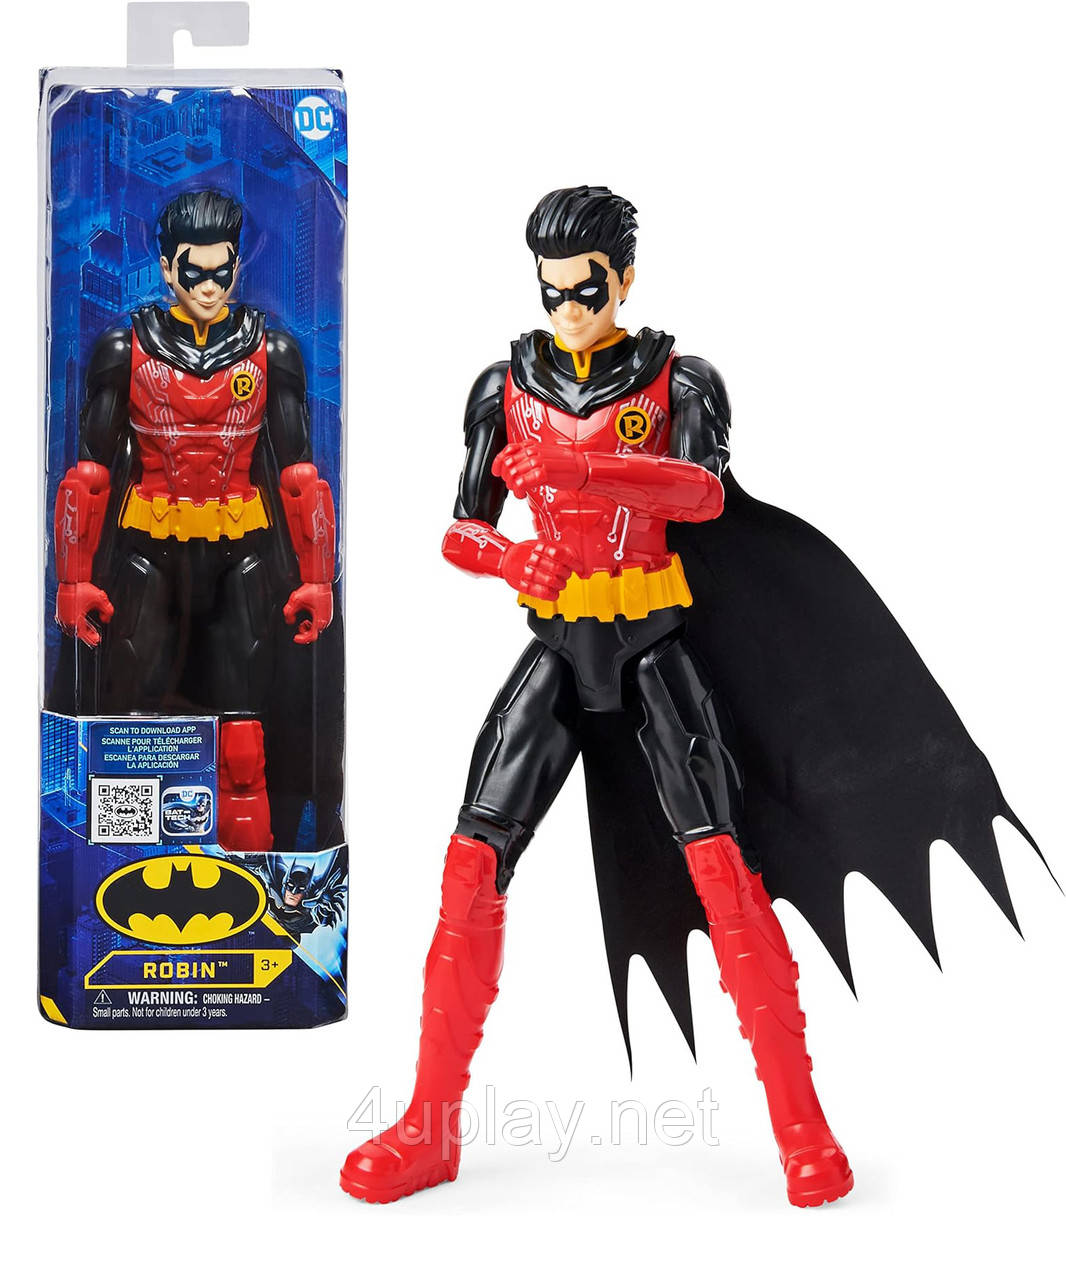 Ігрова фігурка Робін 30см. Batman 12-inch Robin Action Figure. 11 точок артикуляції. DC Comics, Spin Master